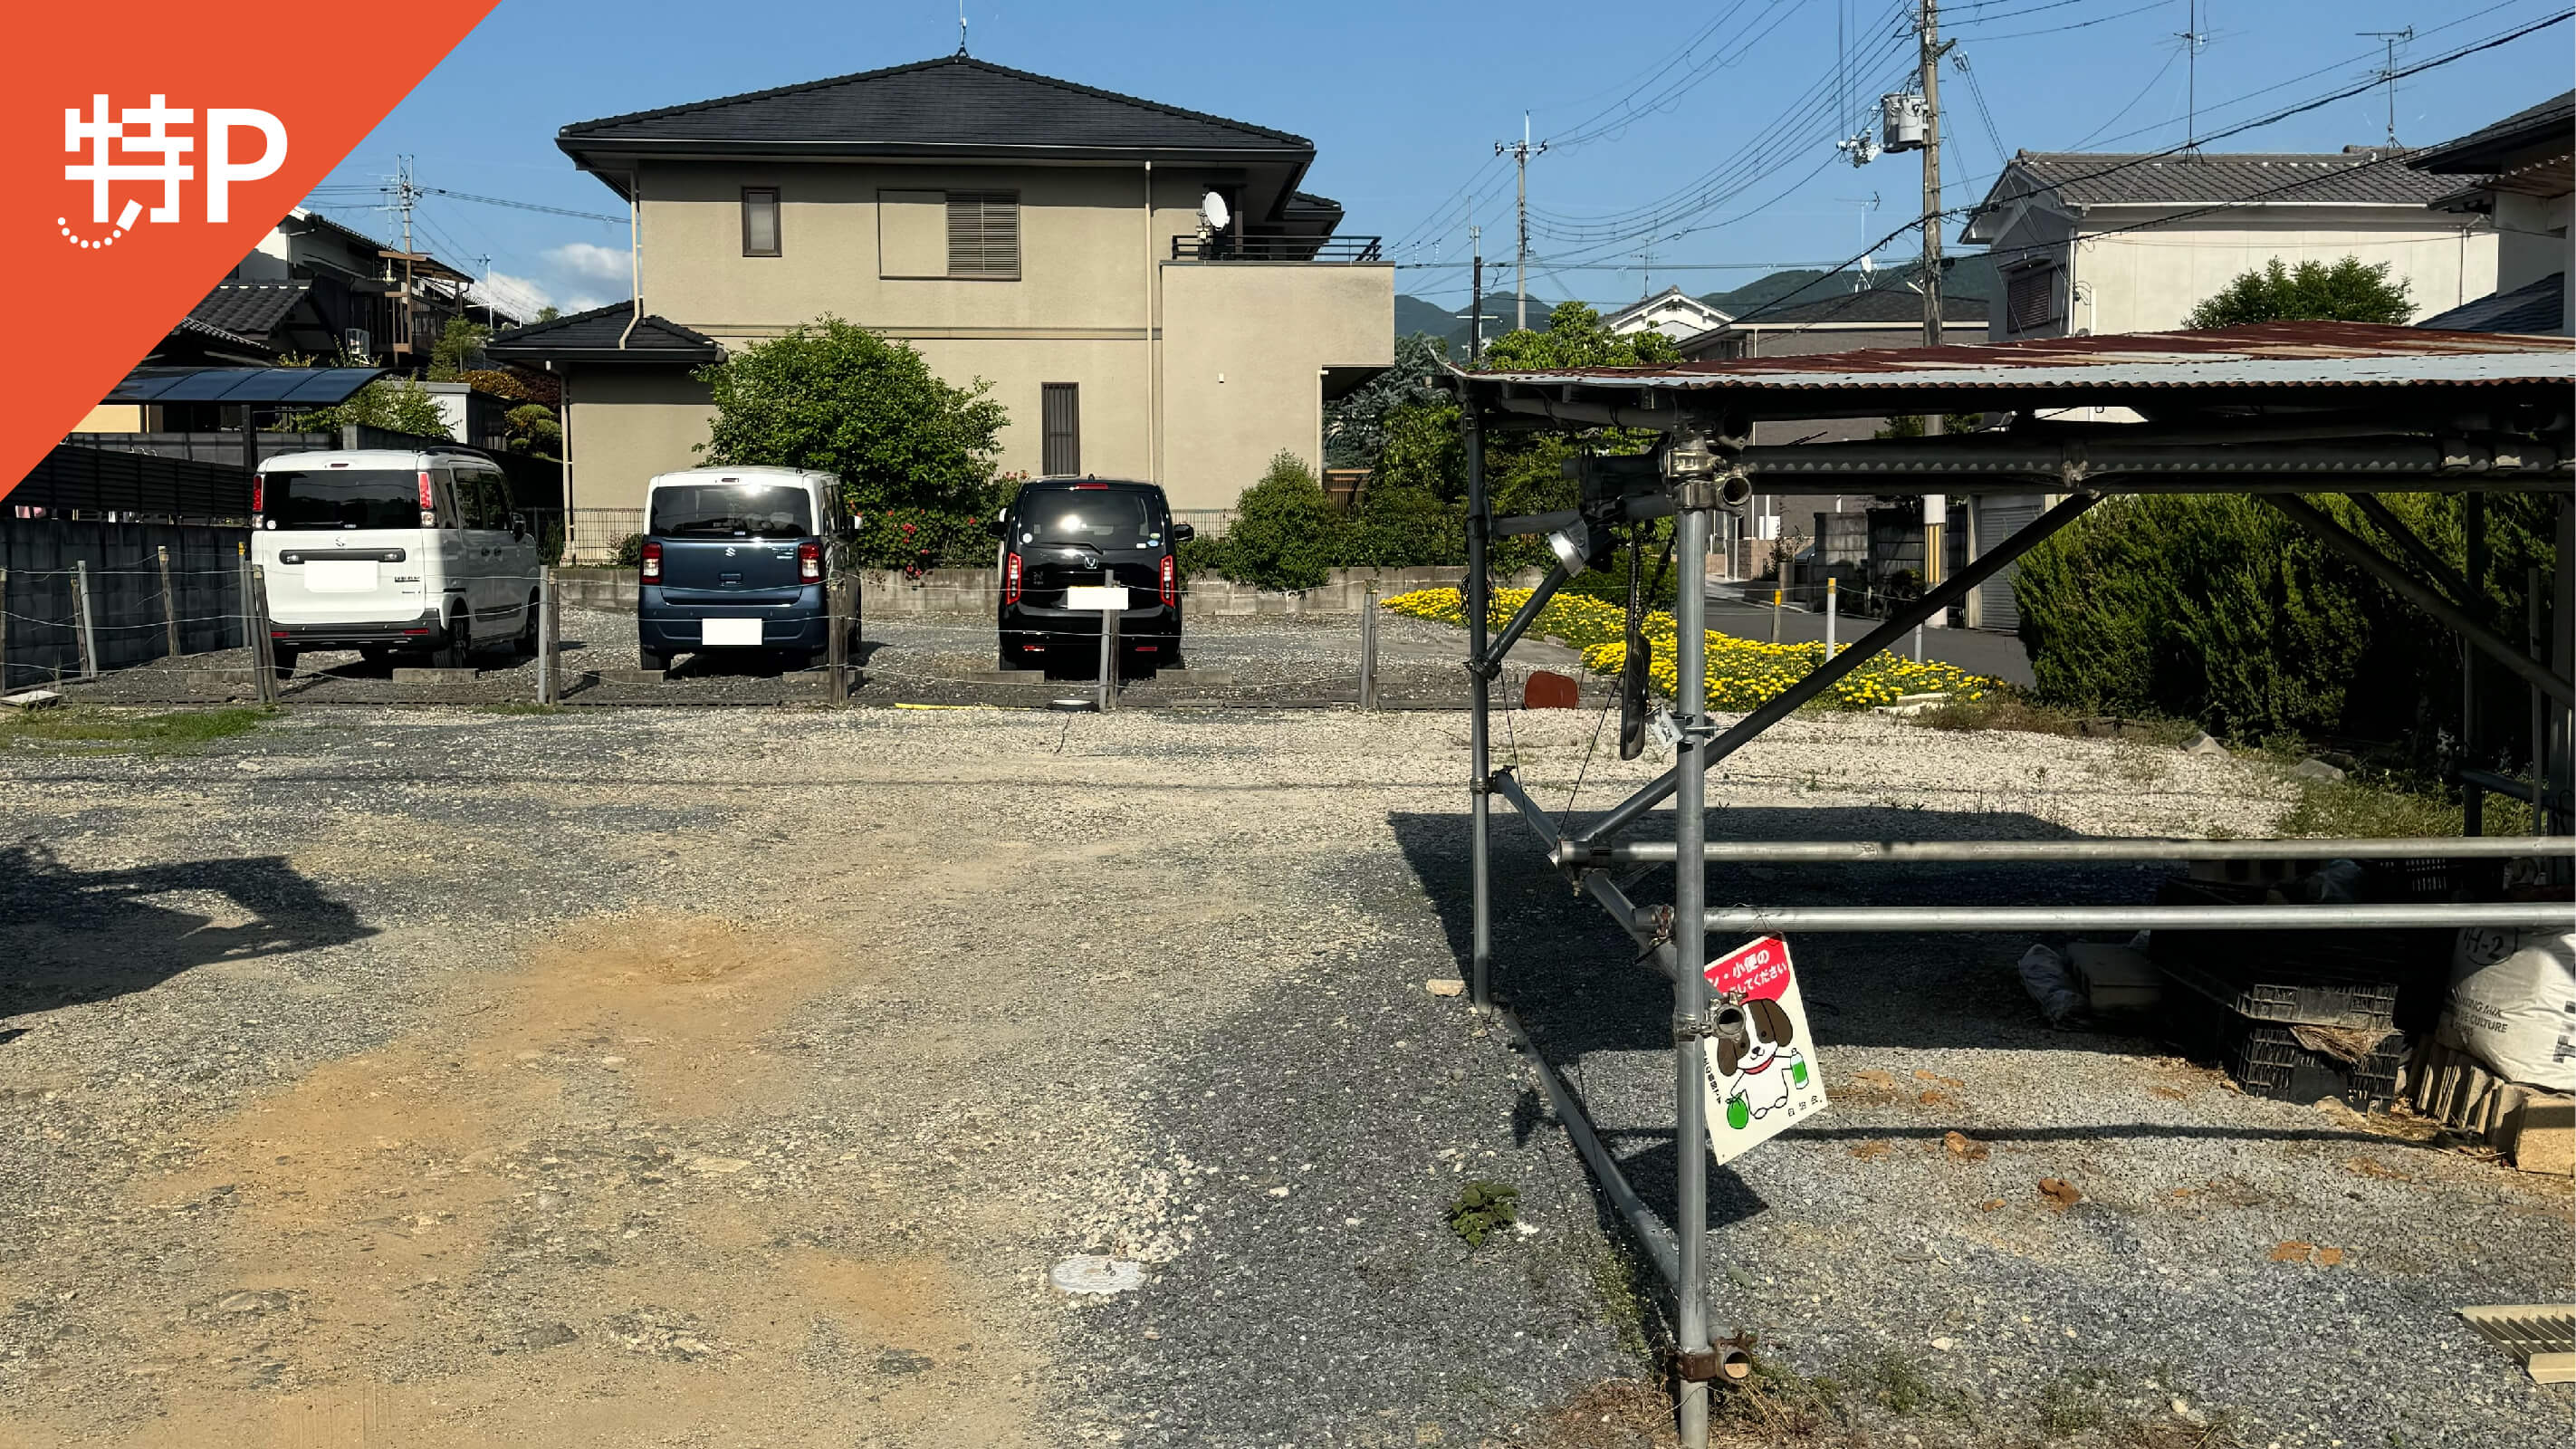 【予約制】特P 菖蒲町1-11駐車場の画像1